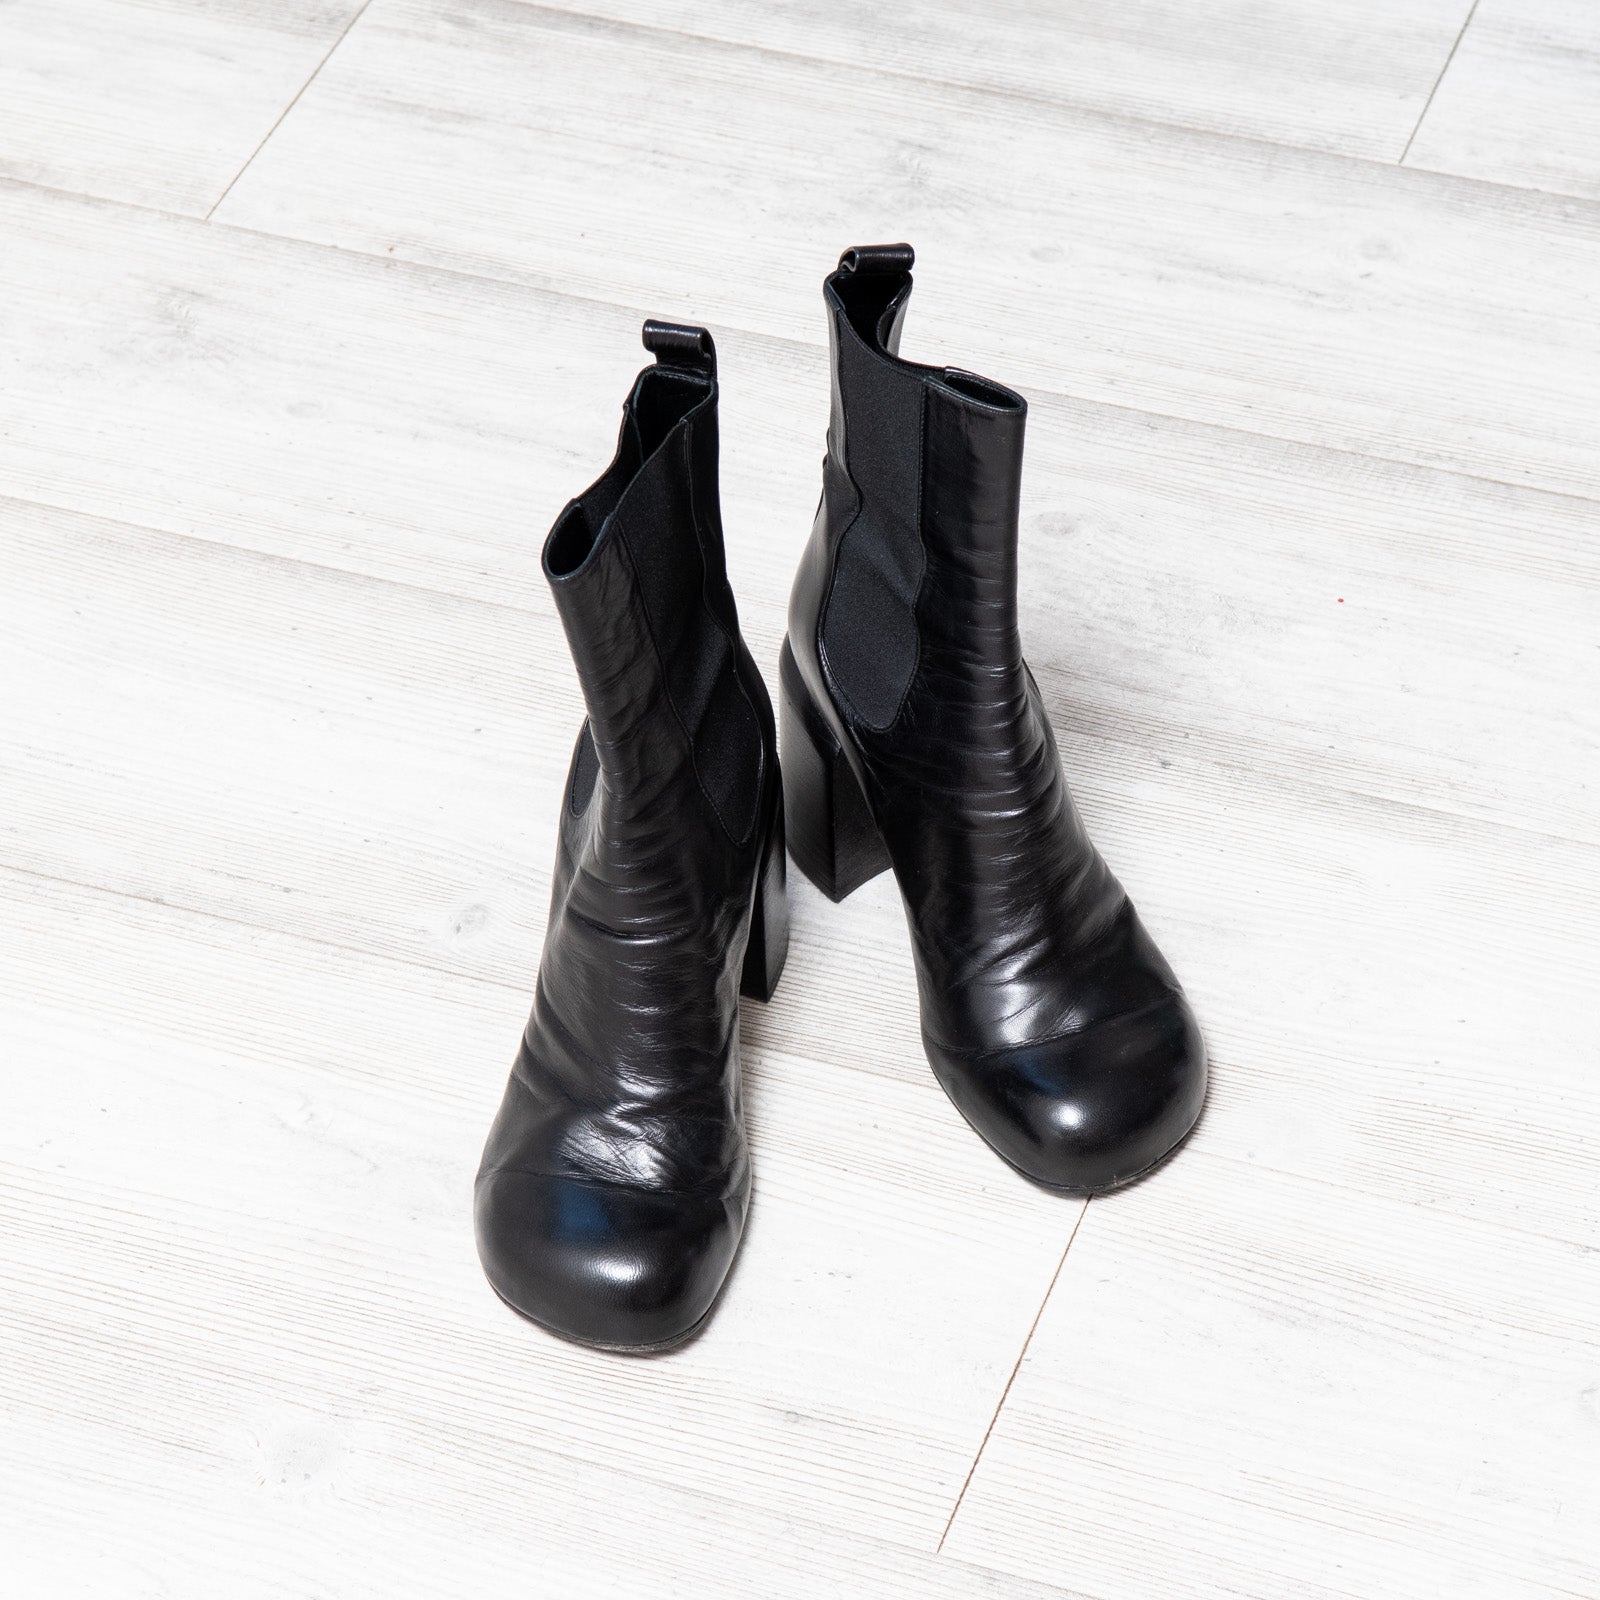 Jill Sander Black Leather Ankle Boots Size 38 - EVEYSPRELOVED